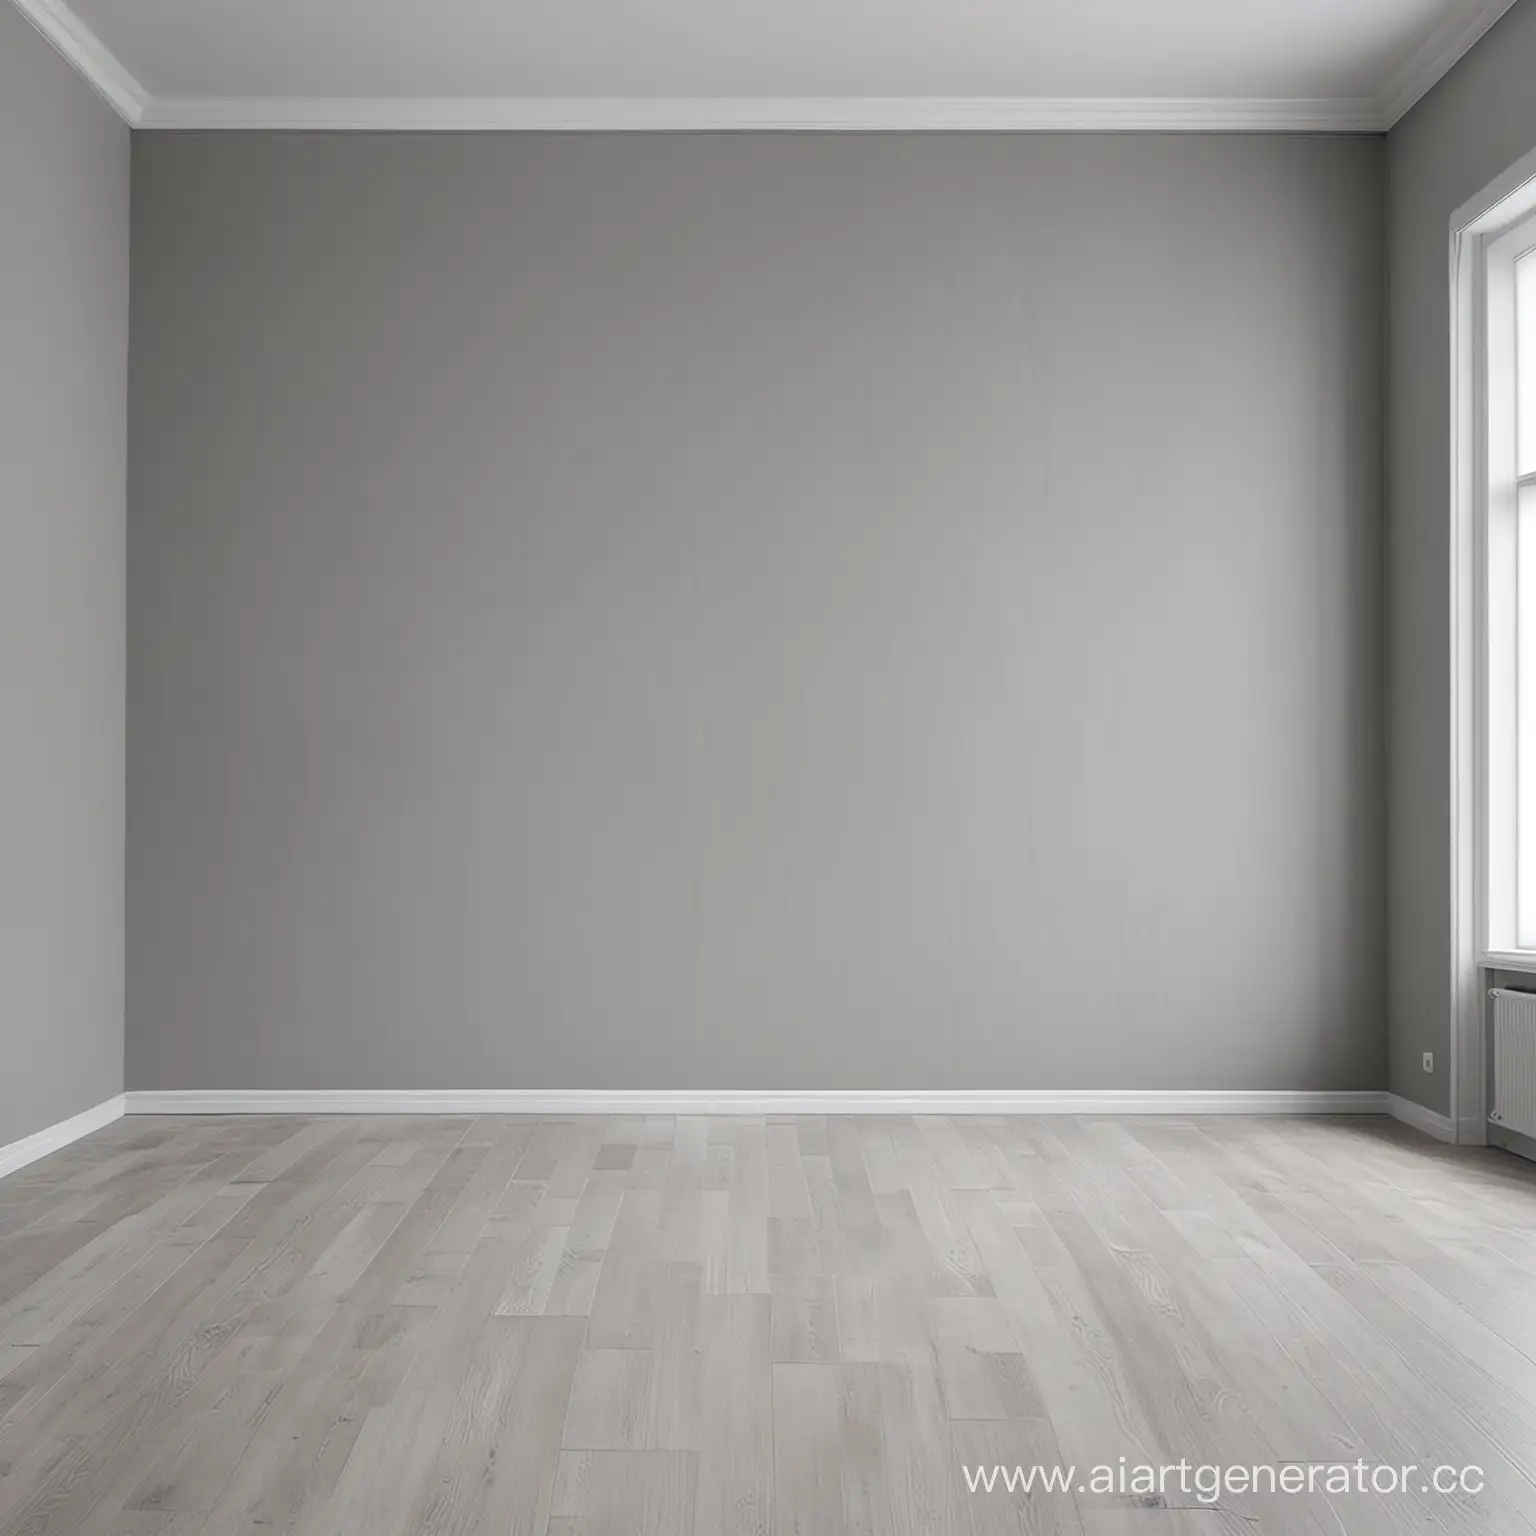 Пустая комната в подвале в стиле минимализма, серыя стена